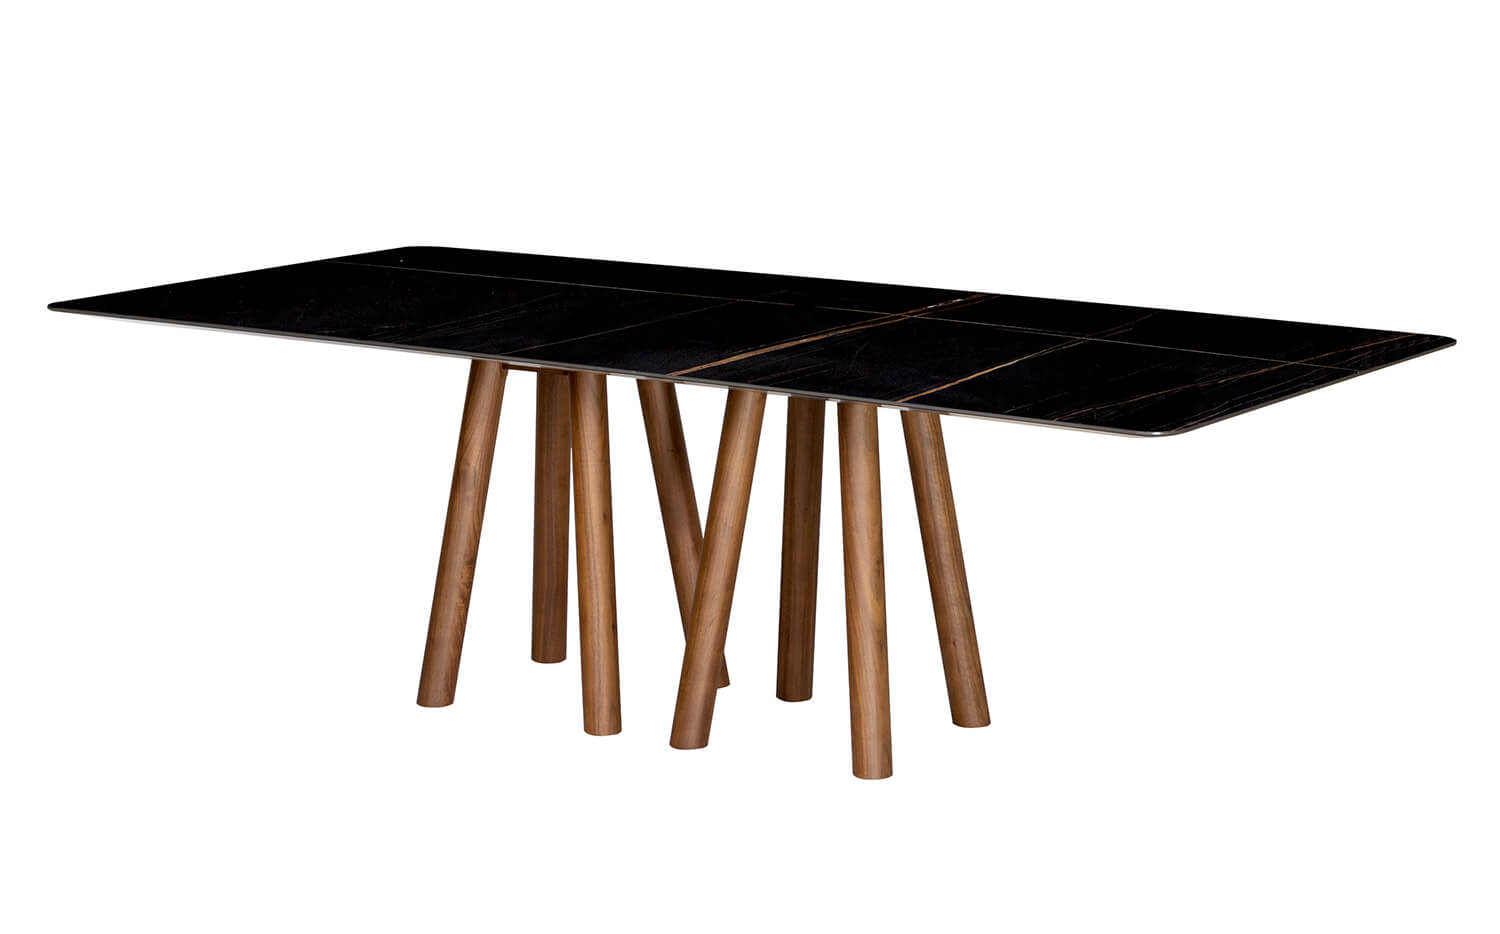 Mos-i-ko a cer 001 table with ceramic top